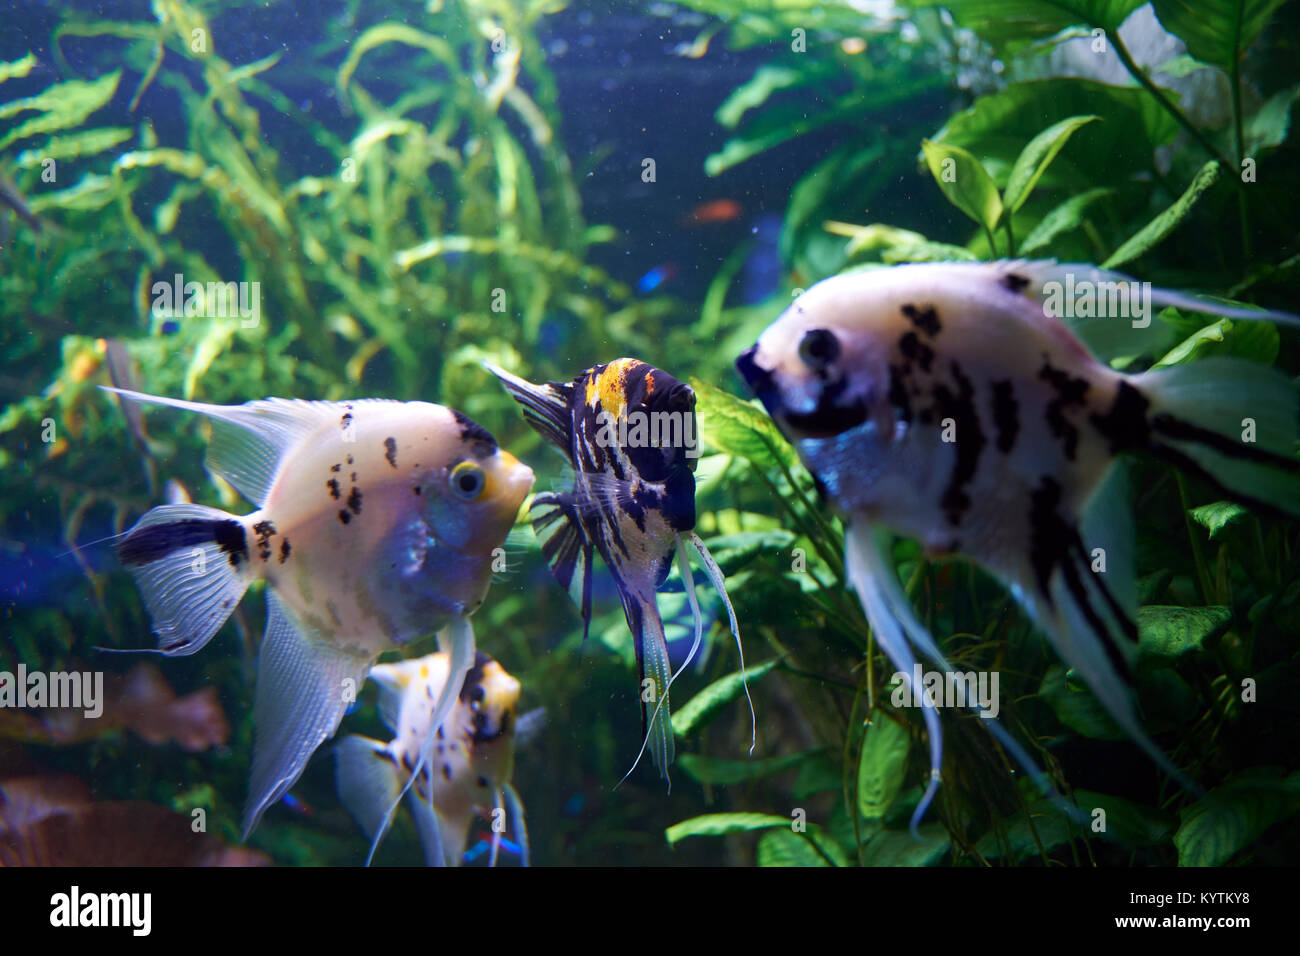 Pterophyllum. Pesci di acqua dolce della famiglia Cichlidae noto alla maggior parte degli acquaristi come angelfish. Foto Stock